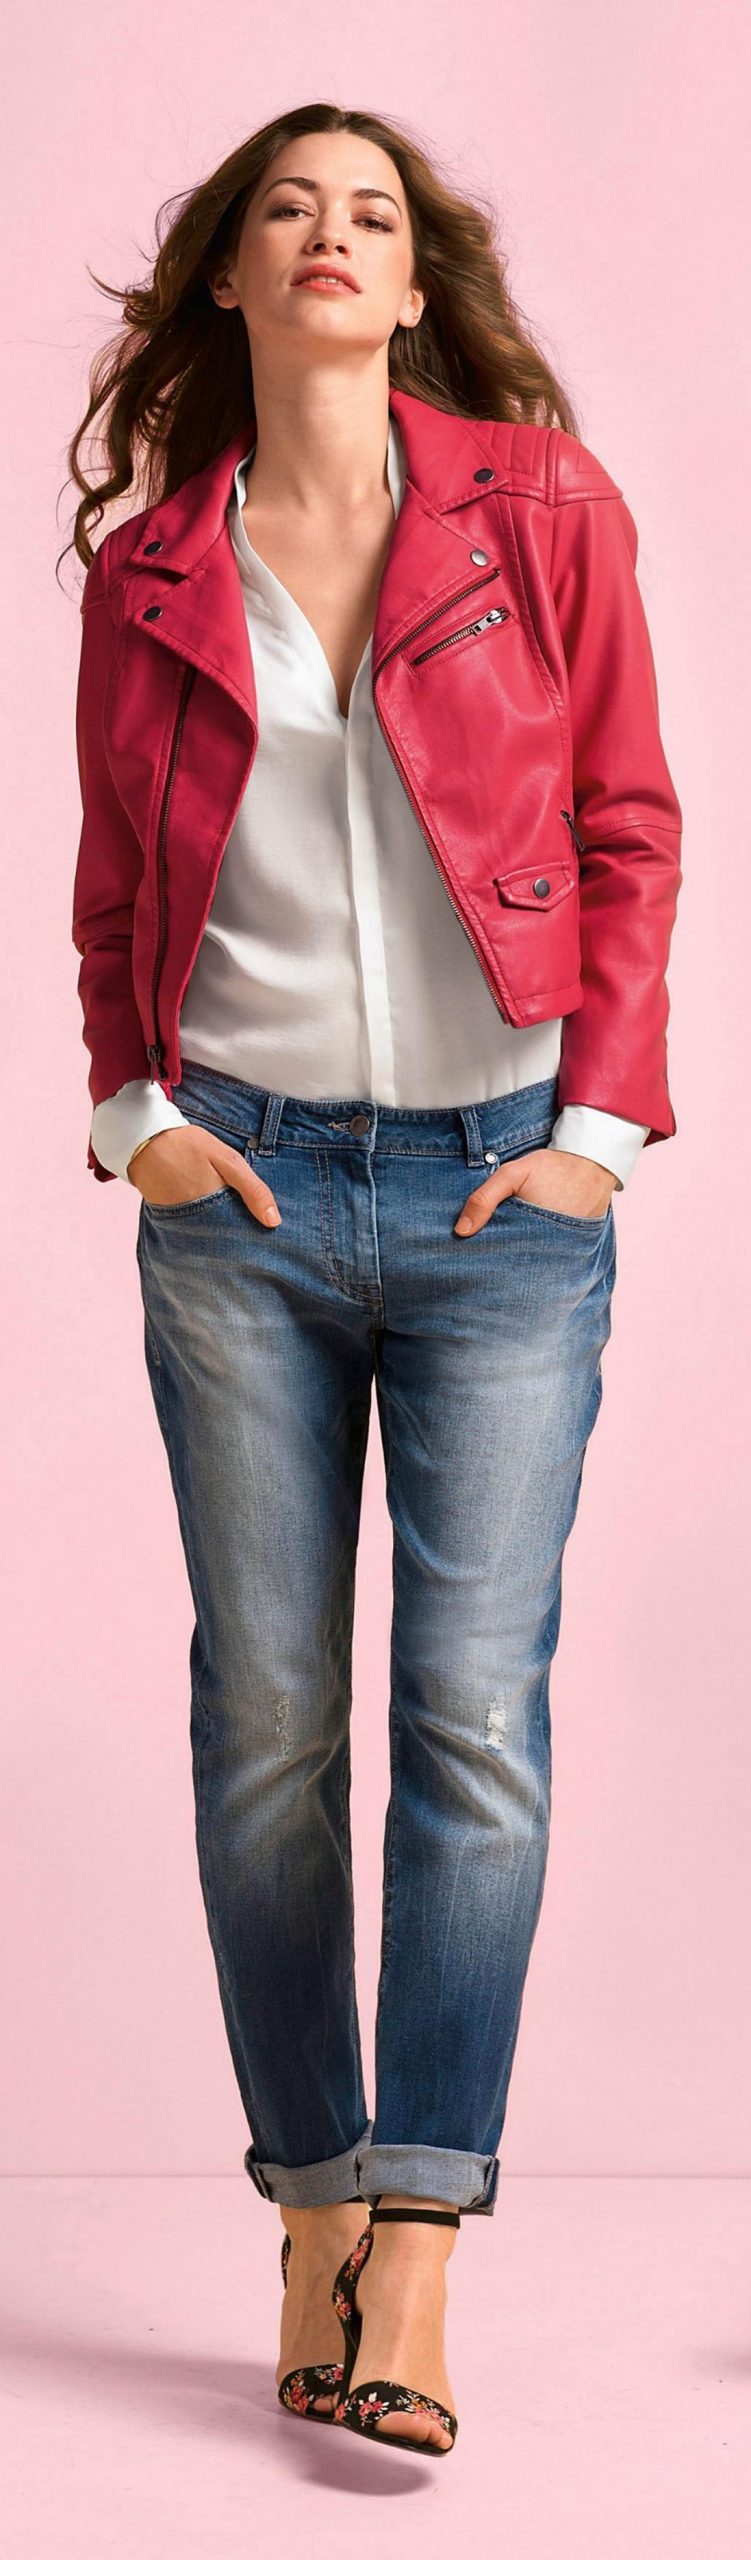 Boyfriend Jeans Outfit Ideas For Women 2022